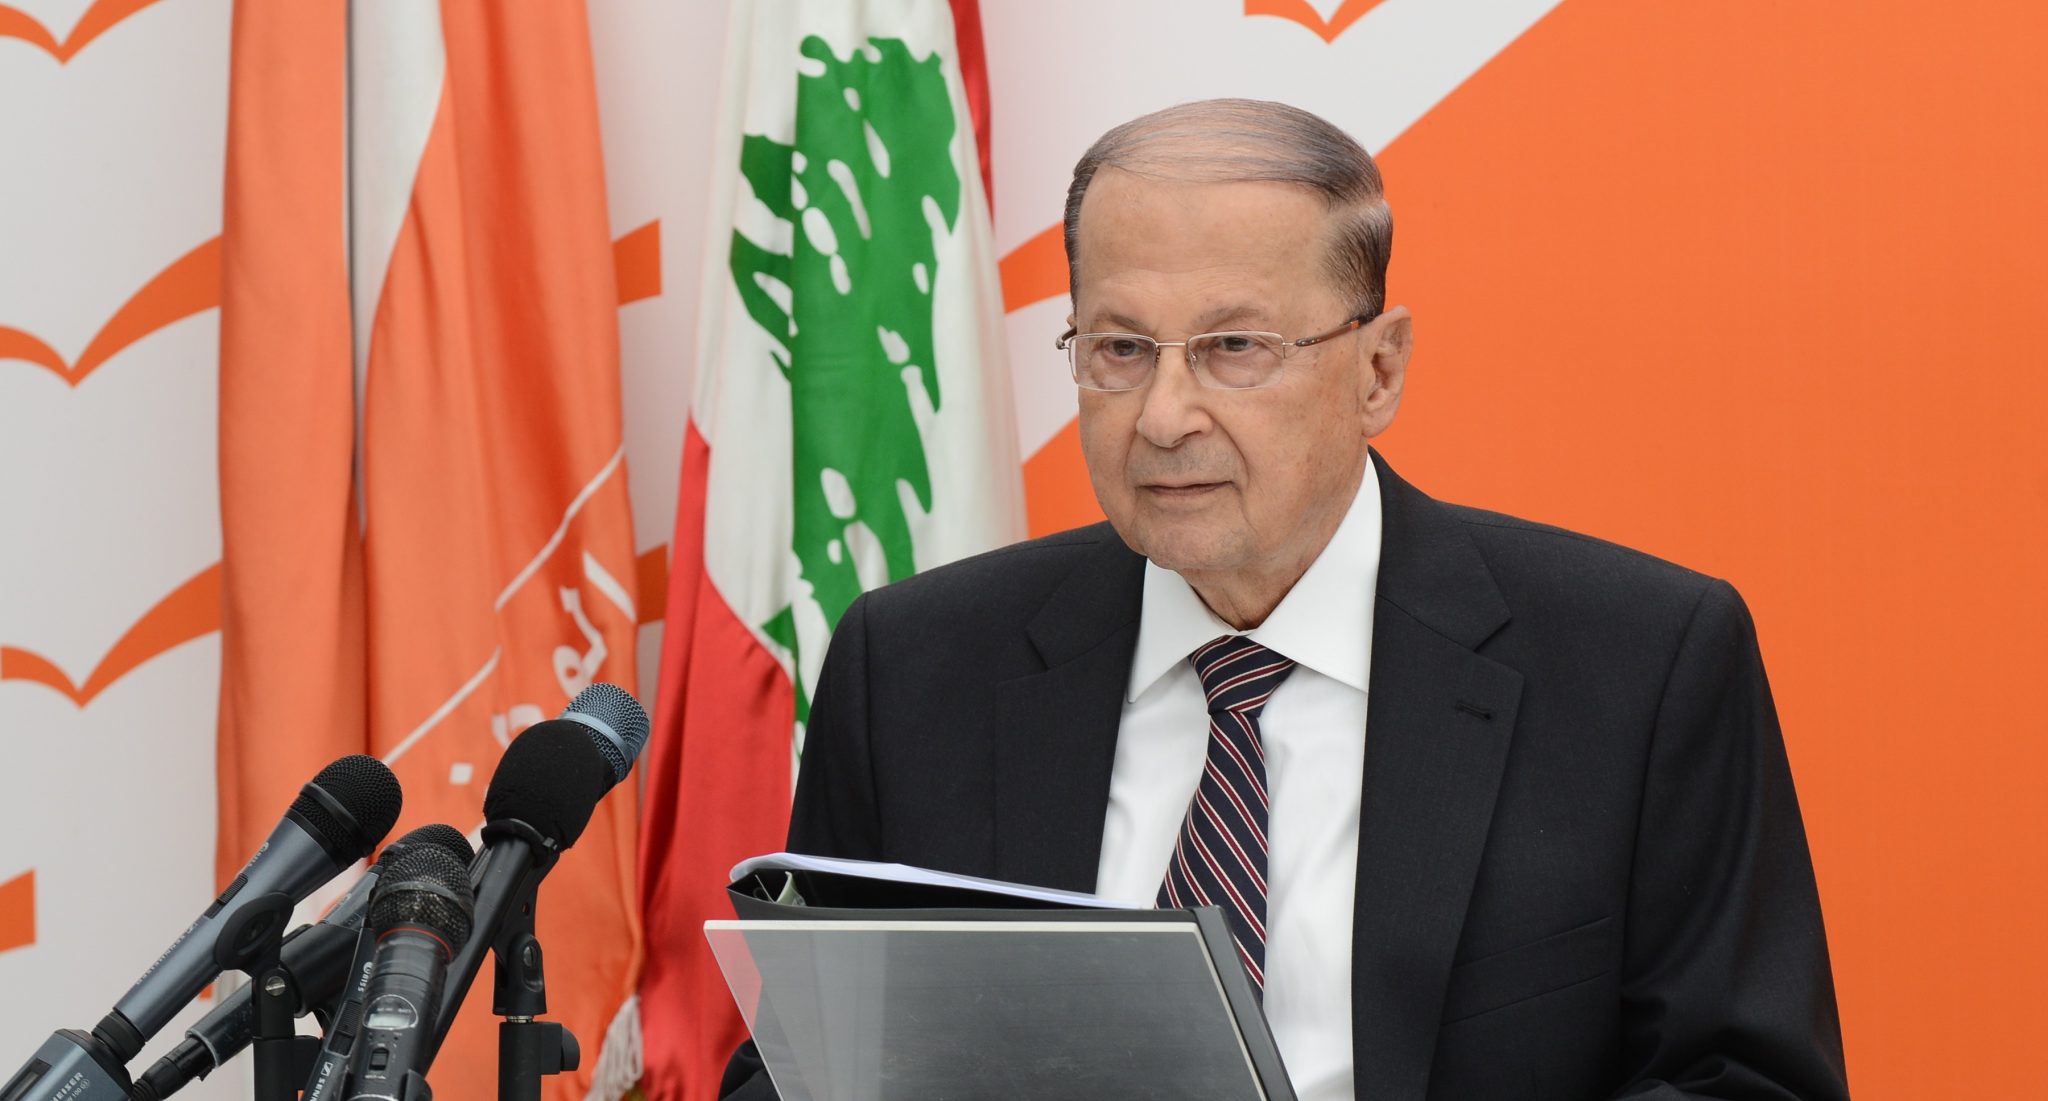   شاهد| سقوط الرئيس اللبنانى فى القمة العربية